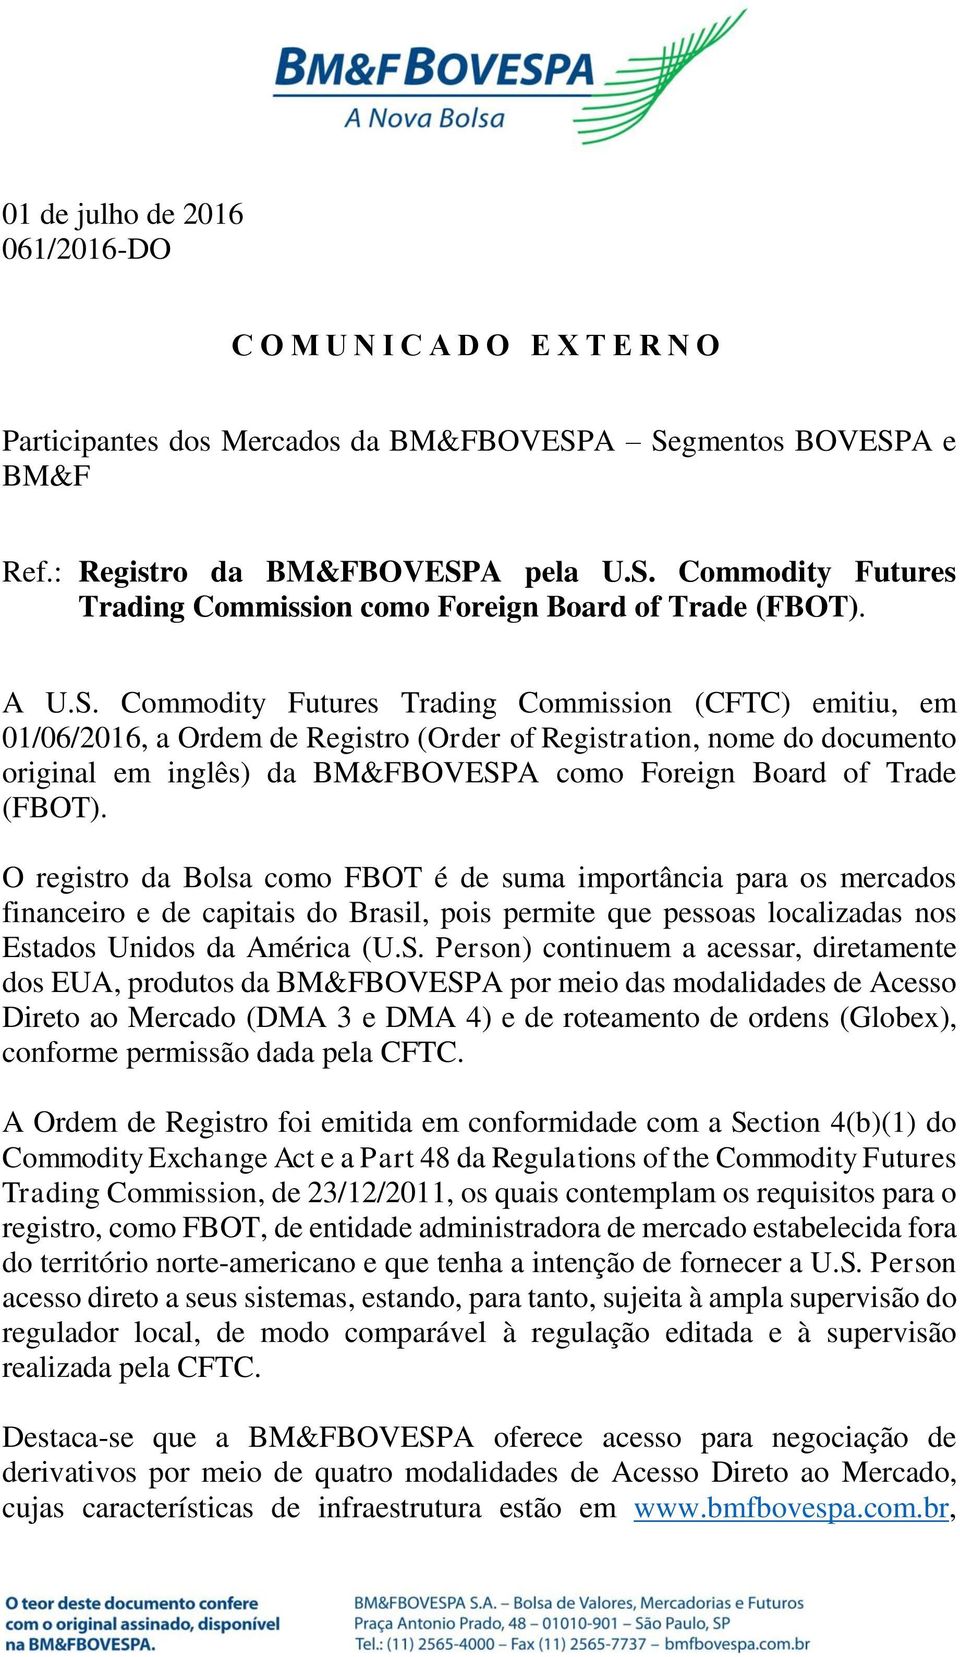 Commodity Futures Trading Commission (CFTC) emitiu, em 01/06/2016, a Ordem de Registro (Order of Registration, nome do documento original em inglês) da BM&FBOVESPA como Foreign Board of Trade (FBOT).